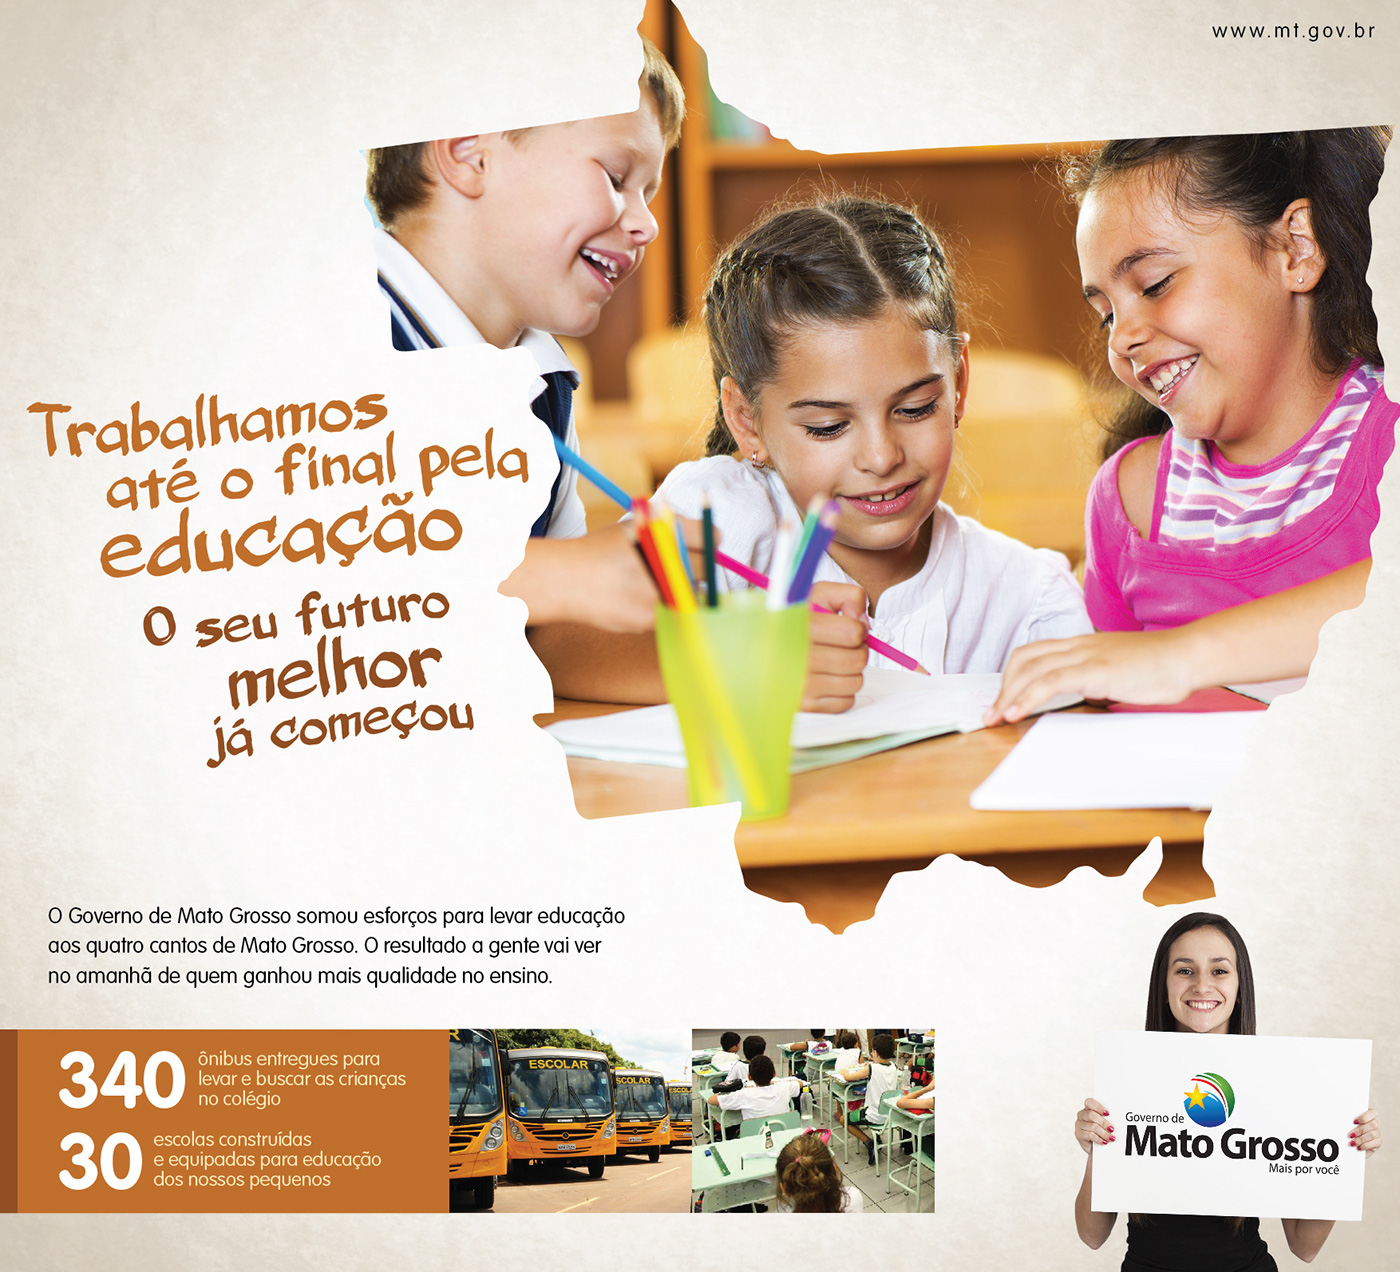 Governo campanha Mato Grosso